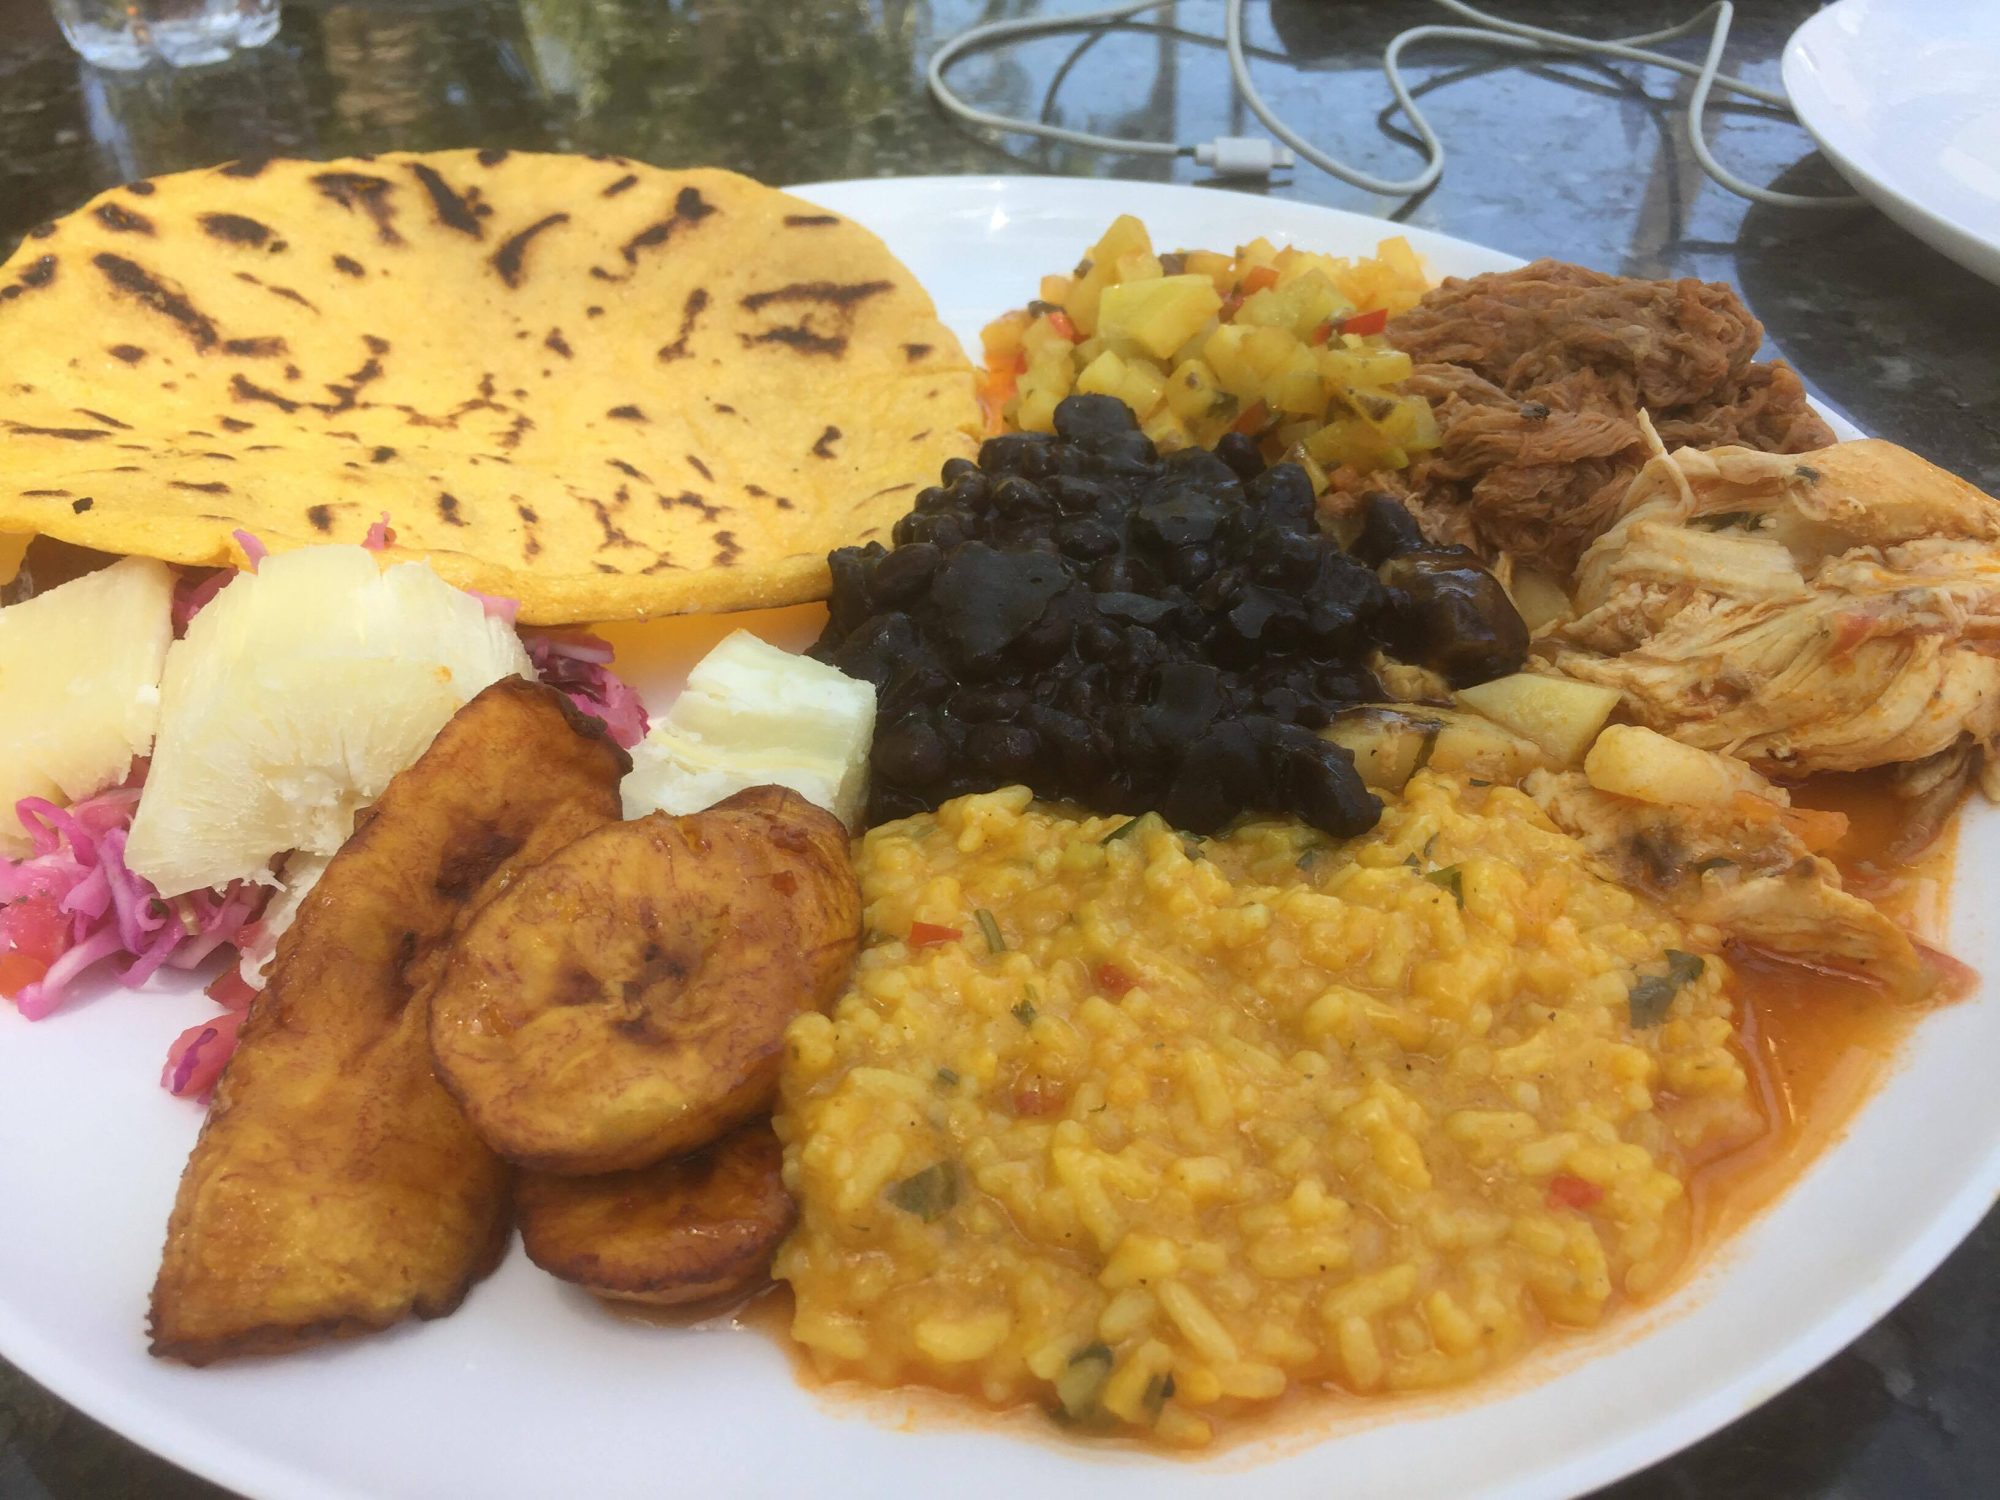 Costa Rican Food at the Pura Vida Show